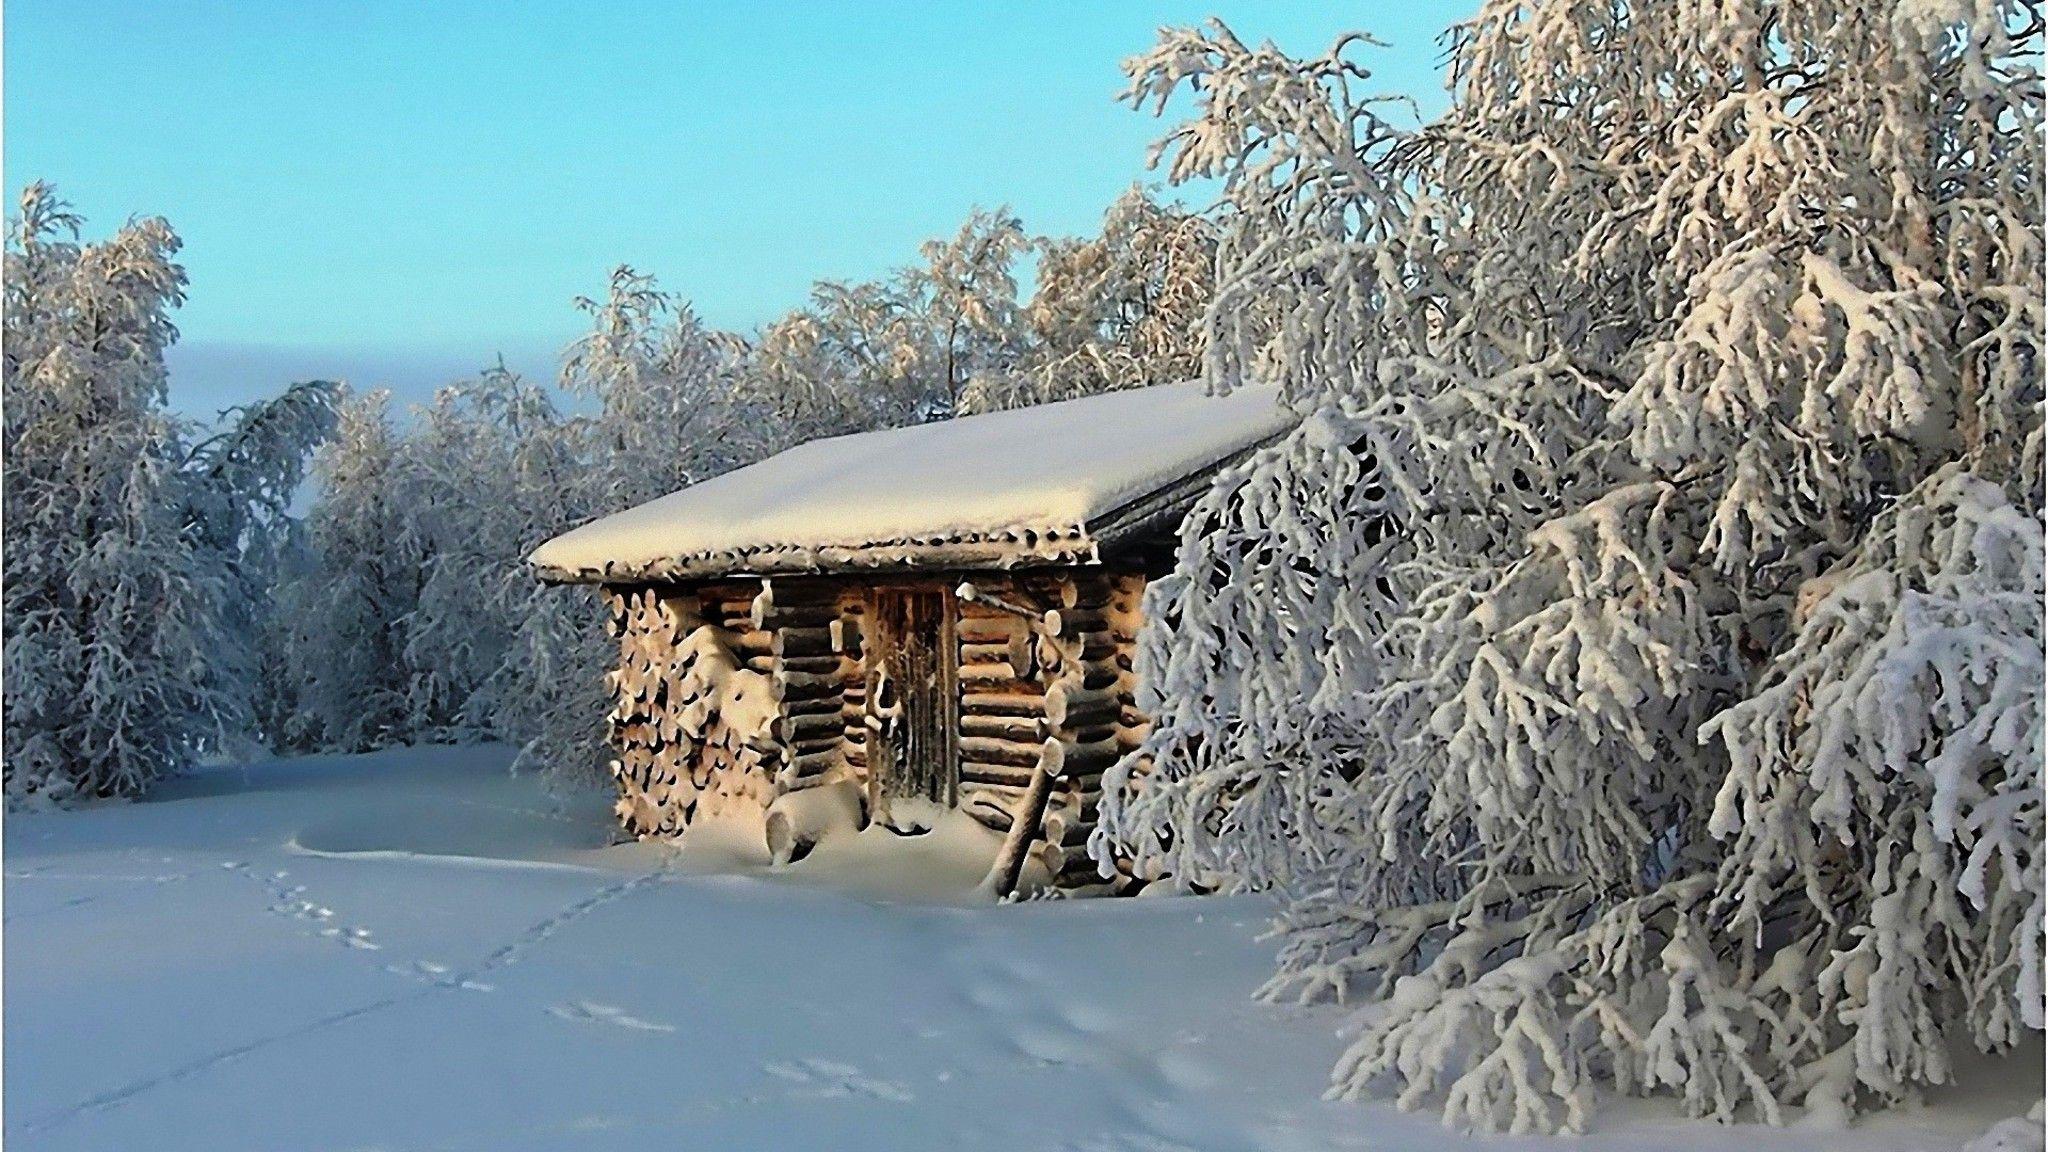 Log cabin in winter wallpaper. PC